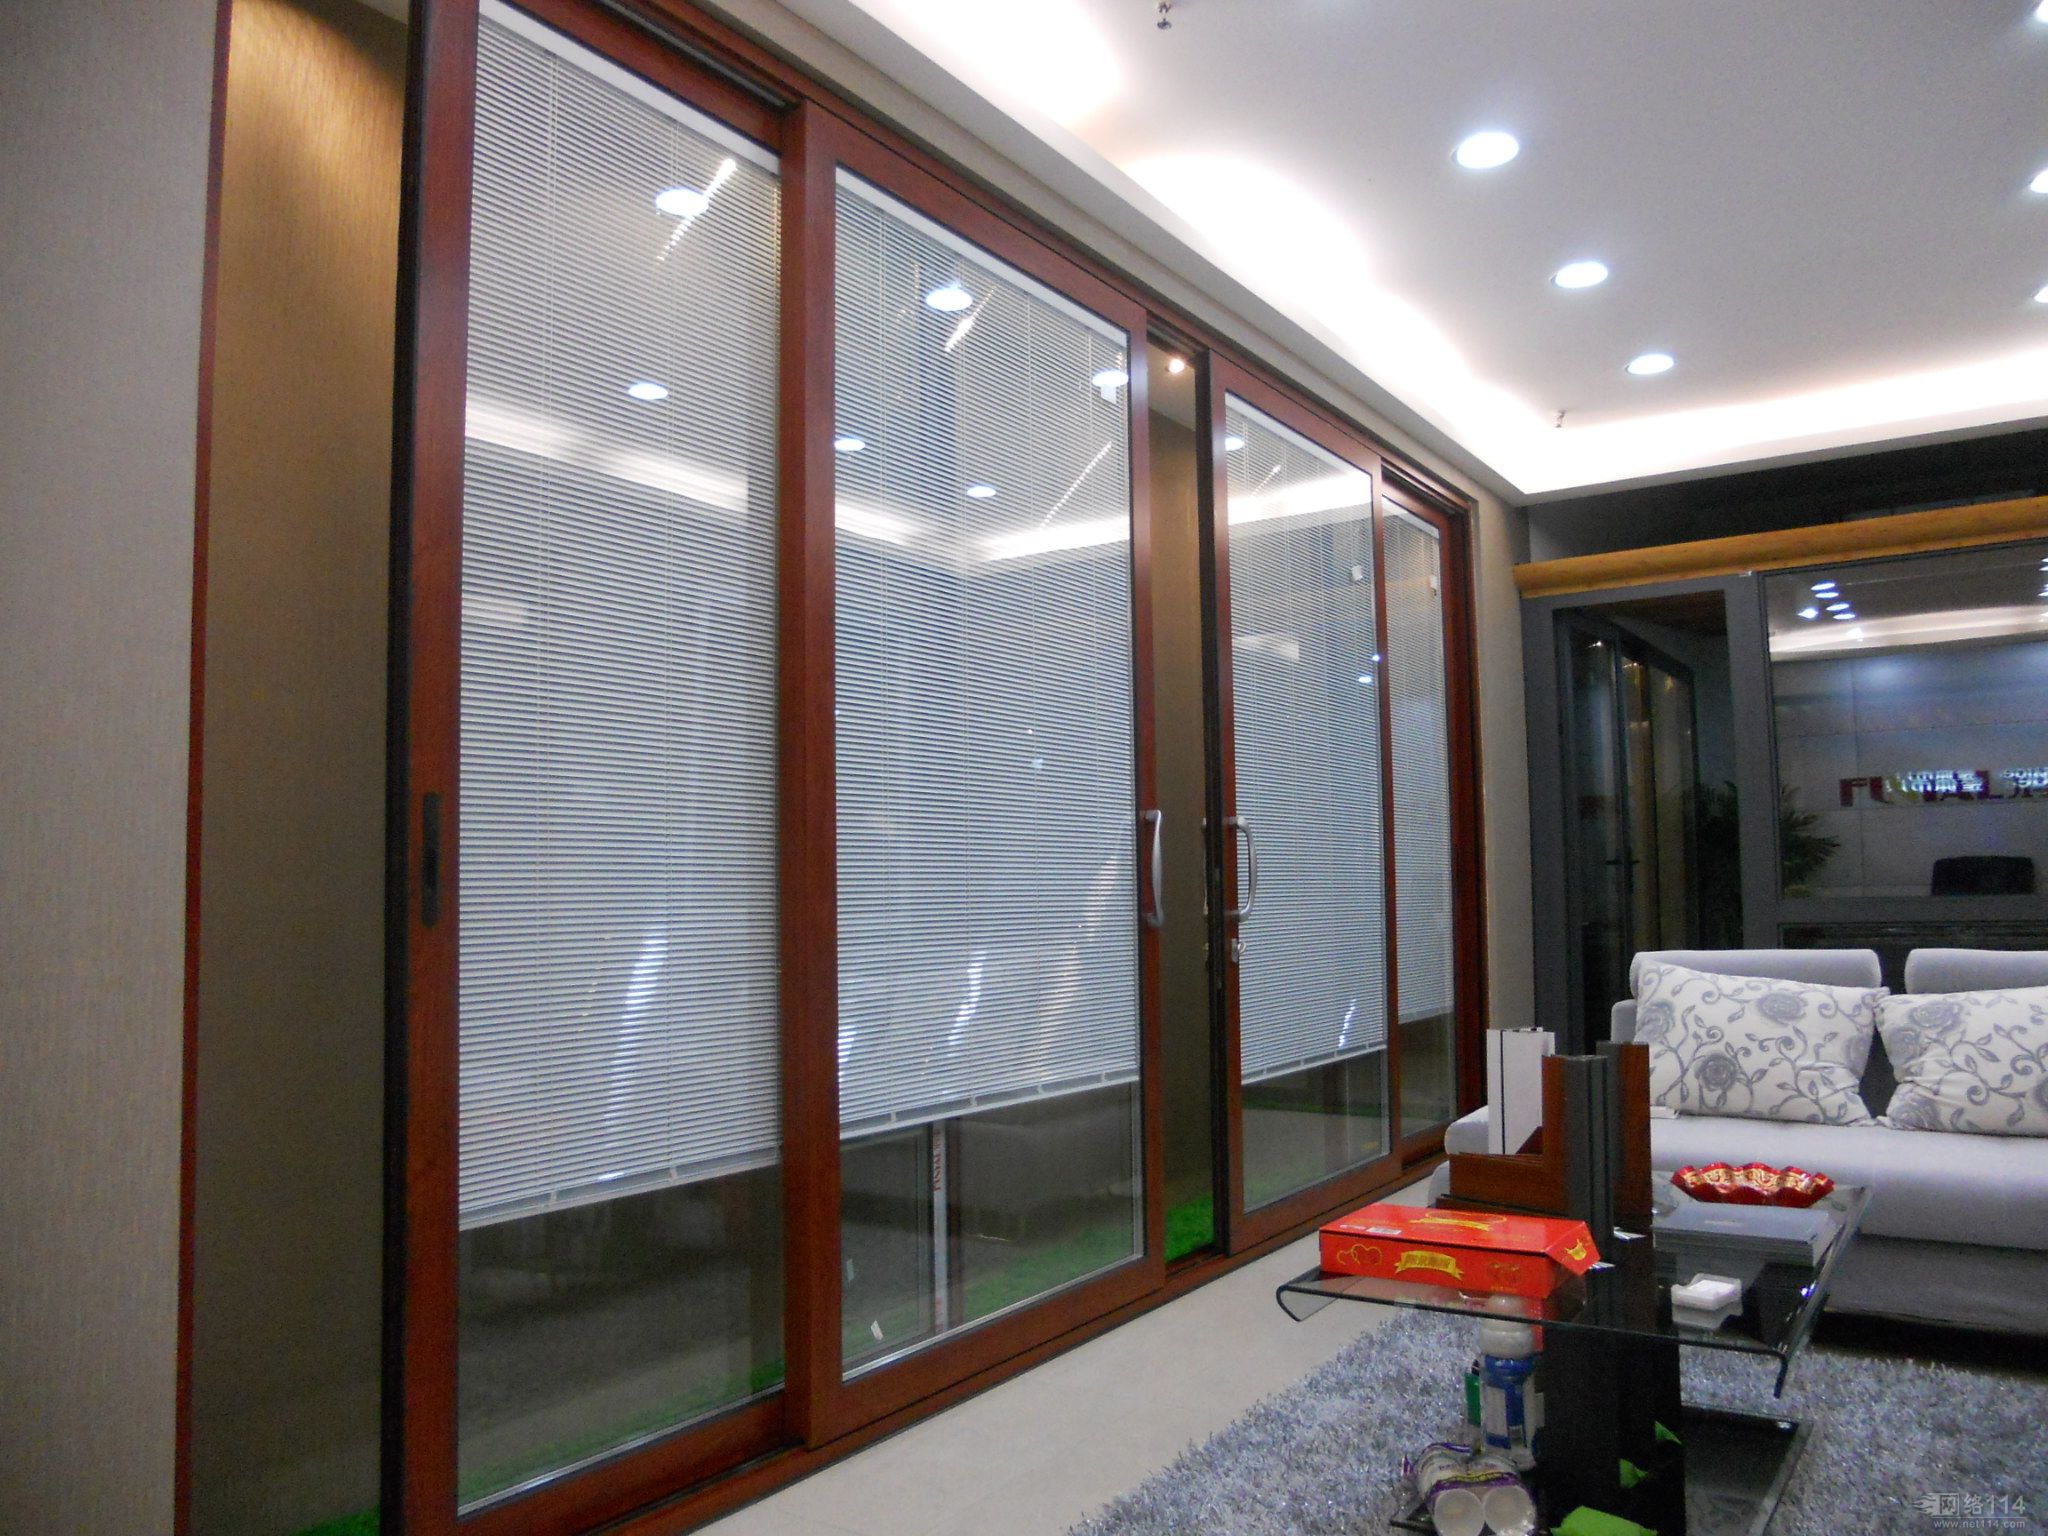 上海铝合金门窗|上海节能门窗|上海玻璃幕墙|-上海阳光房-上海罗漫新型门窗